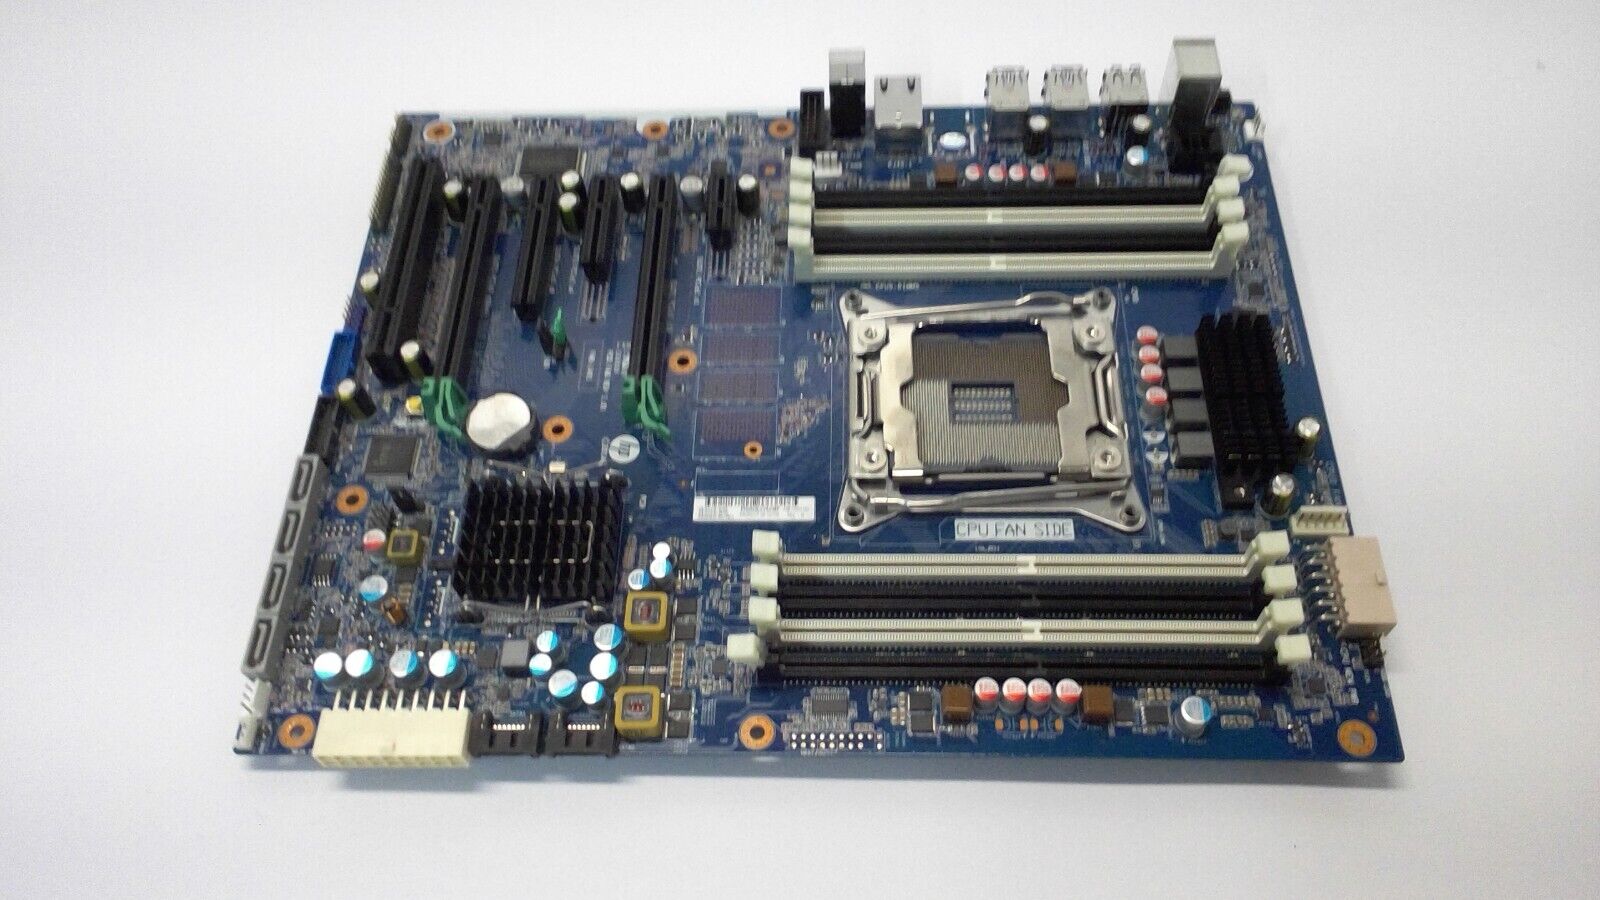 HP Z440 WORKSTATION MOTHERBOARD DDR4 LGA 2011-3 761514-001 710324-002  No I/O